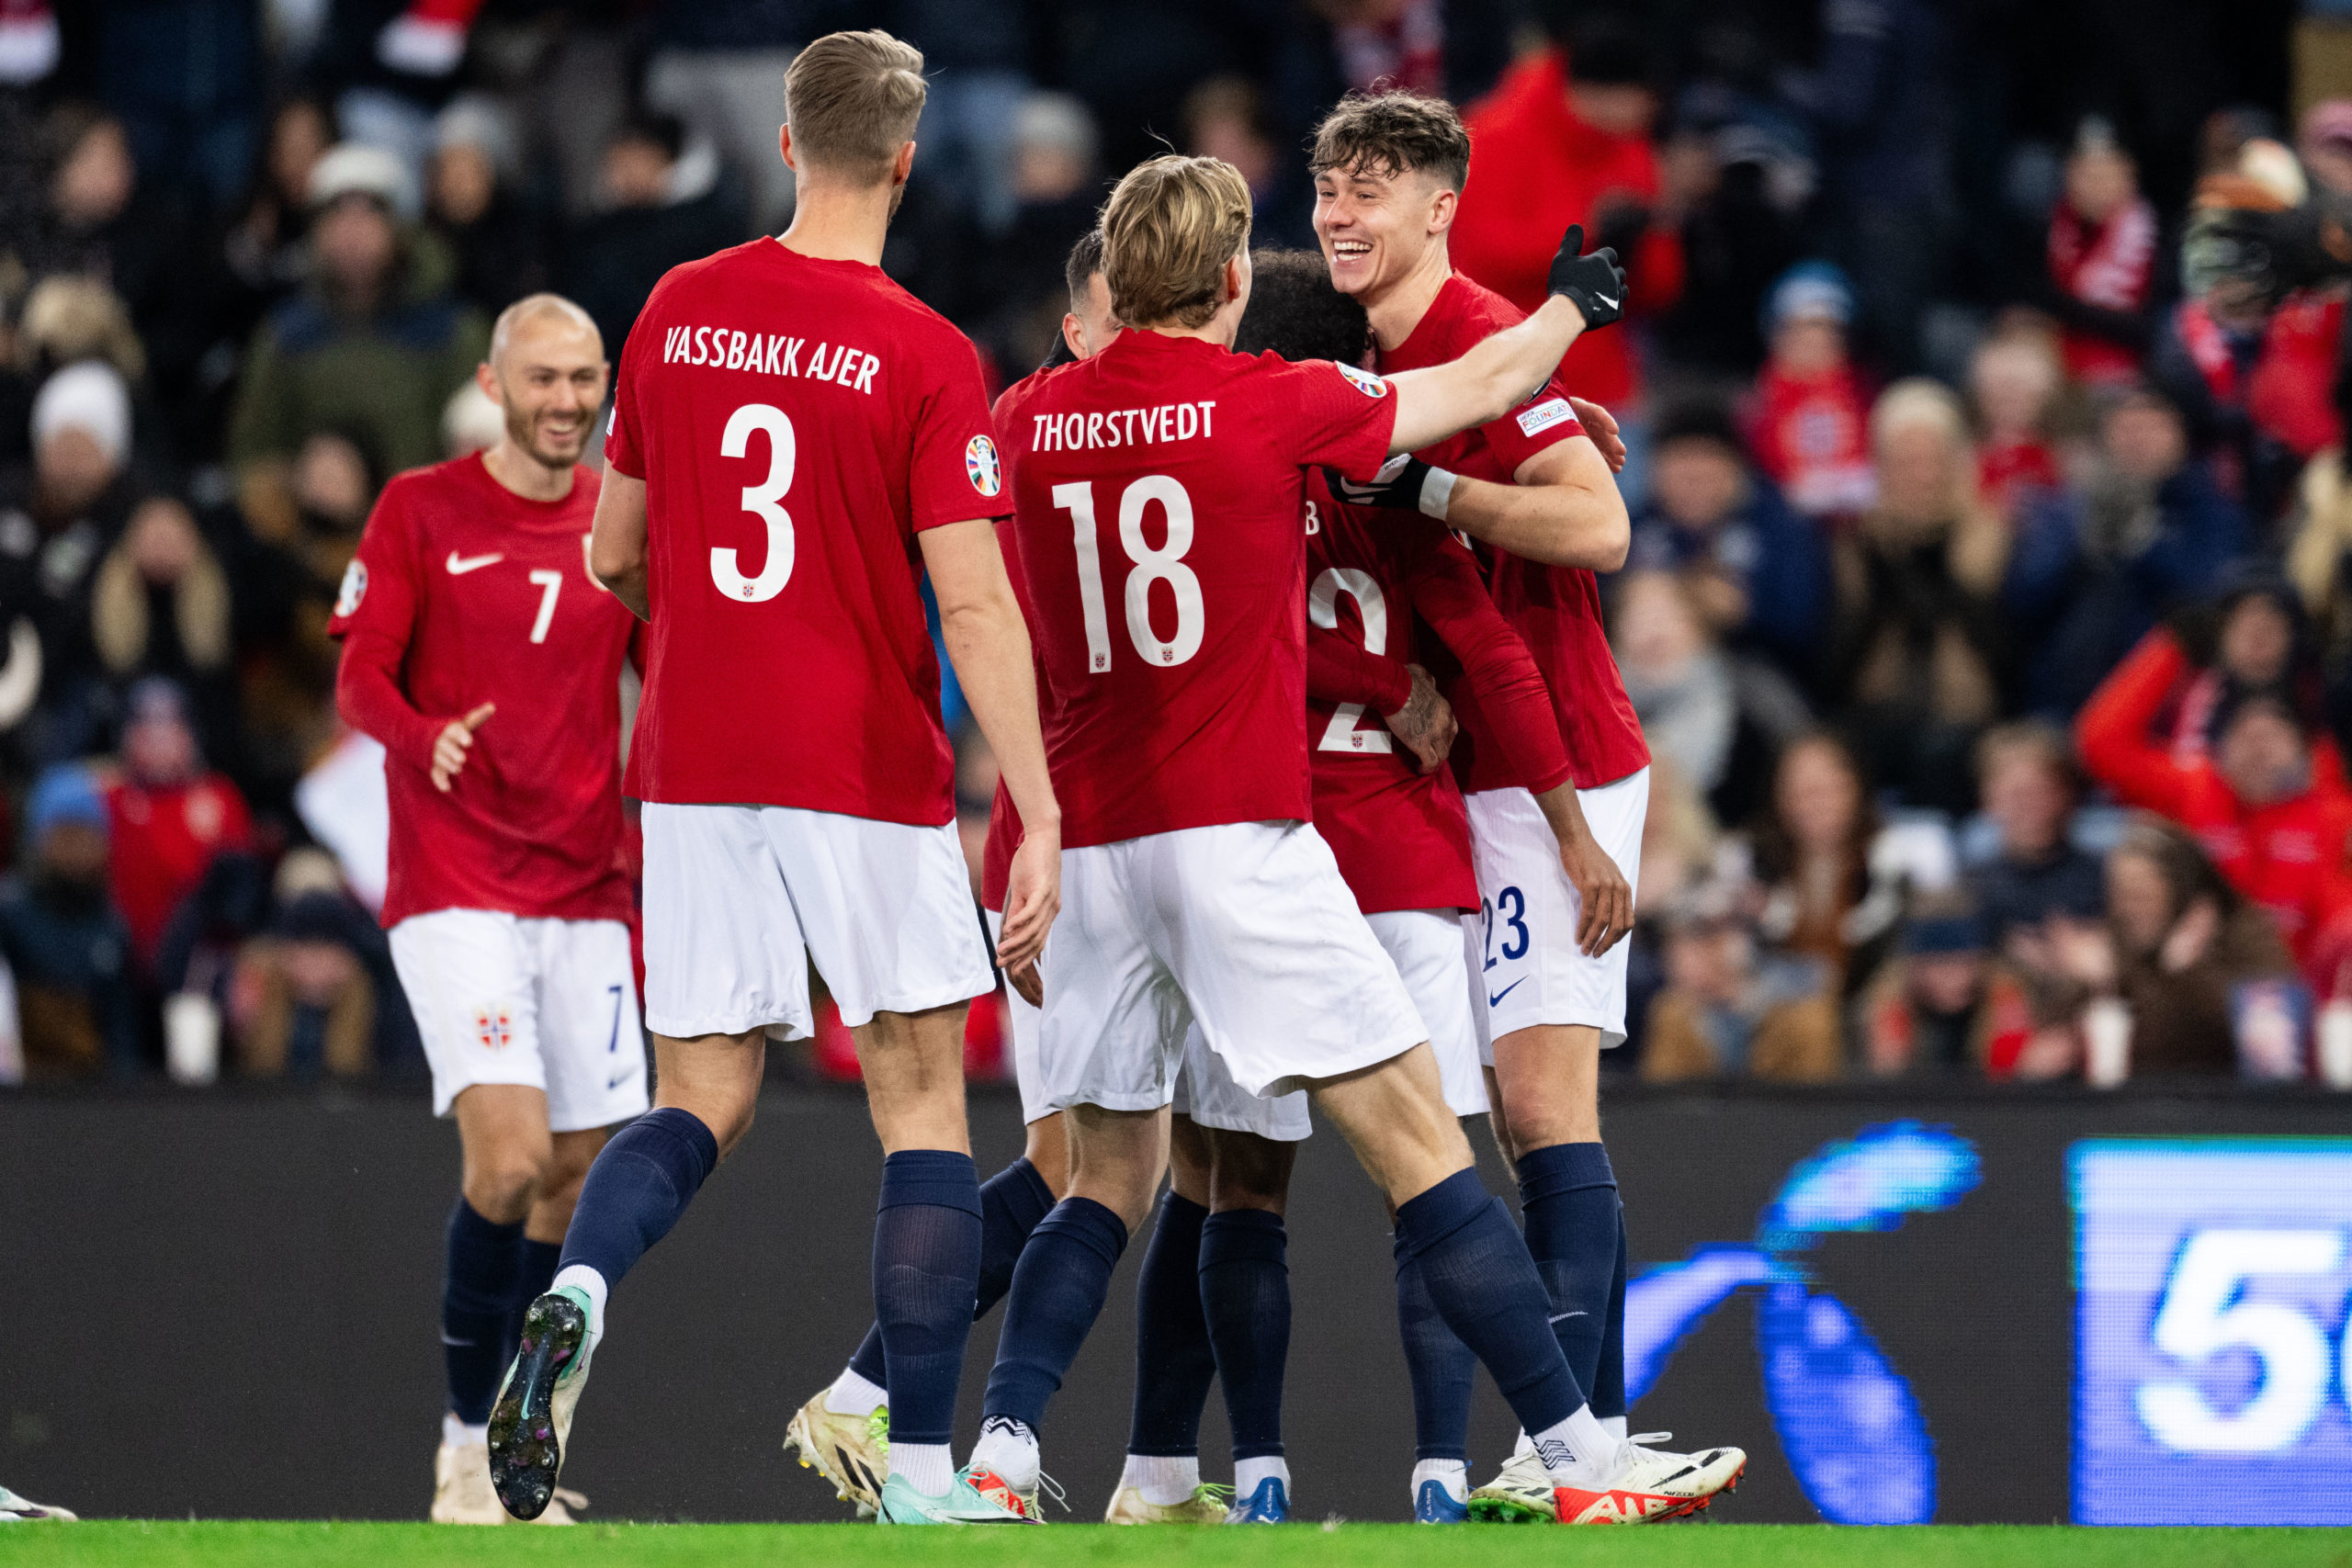 Football, International friendly, Norway - Faroe Islands